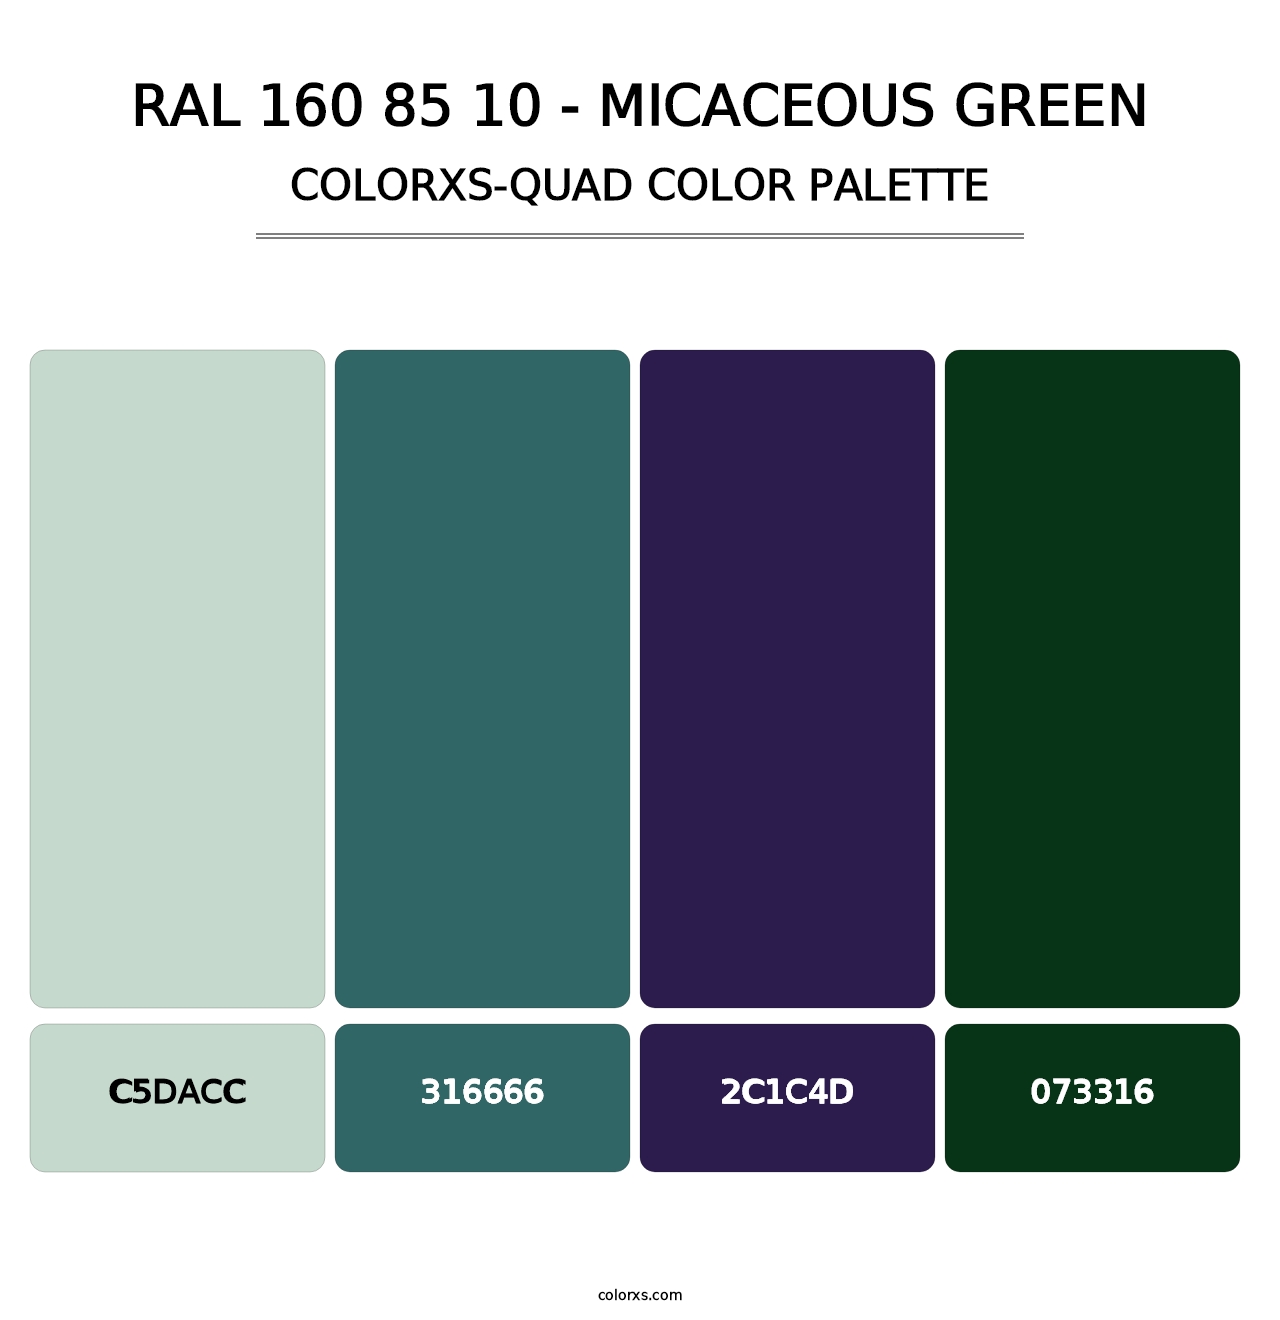 RAL 160 85 10 - Micaceous Green - Colorxs Quad Palette